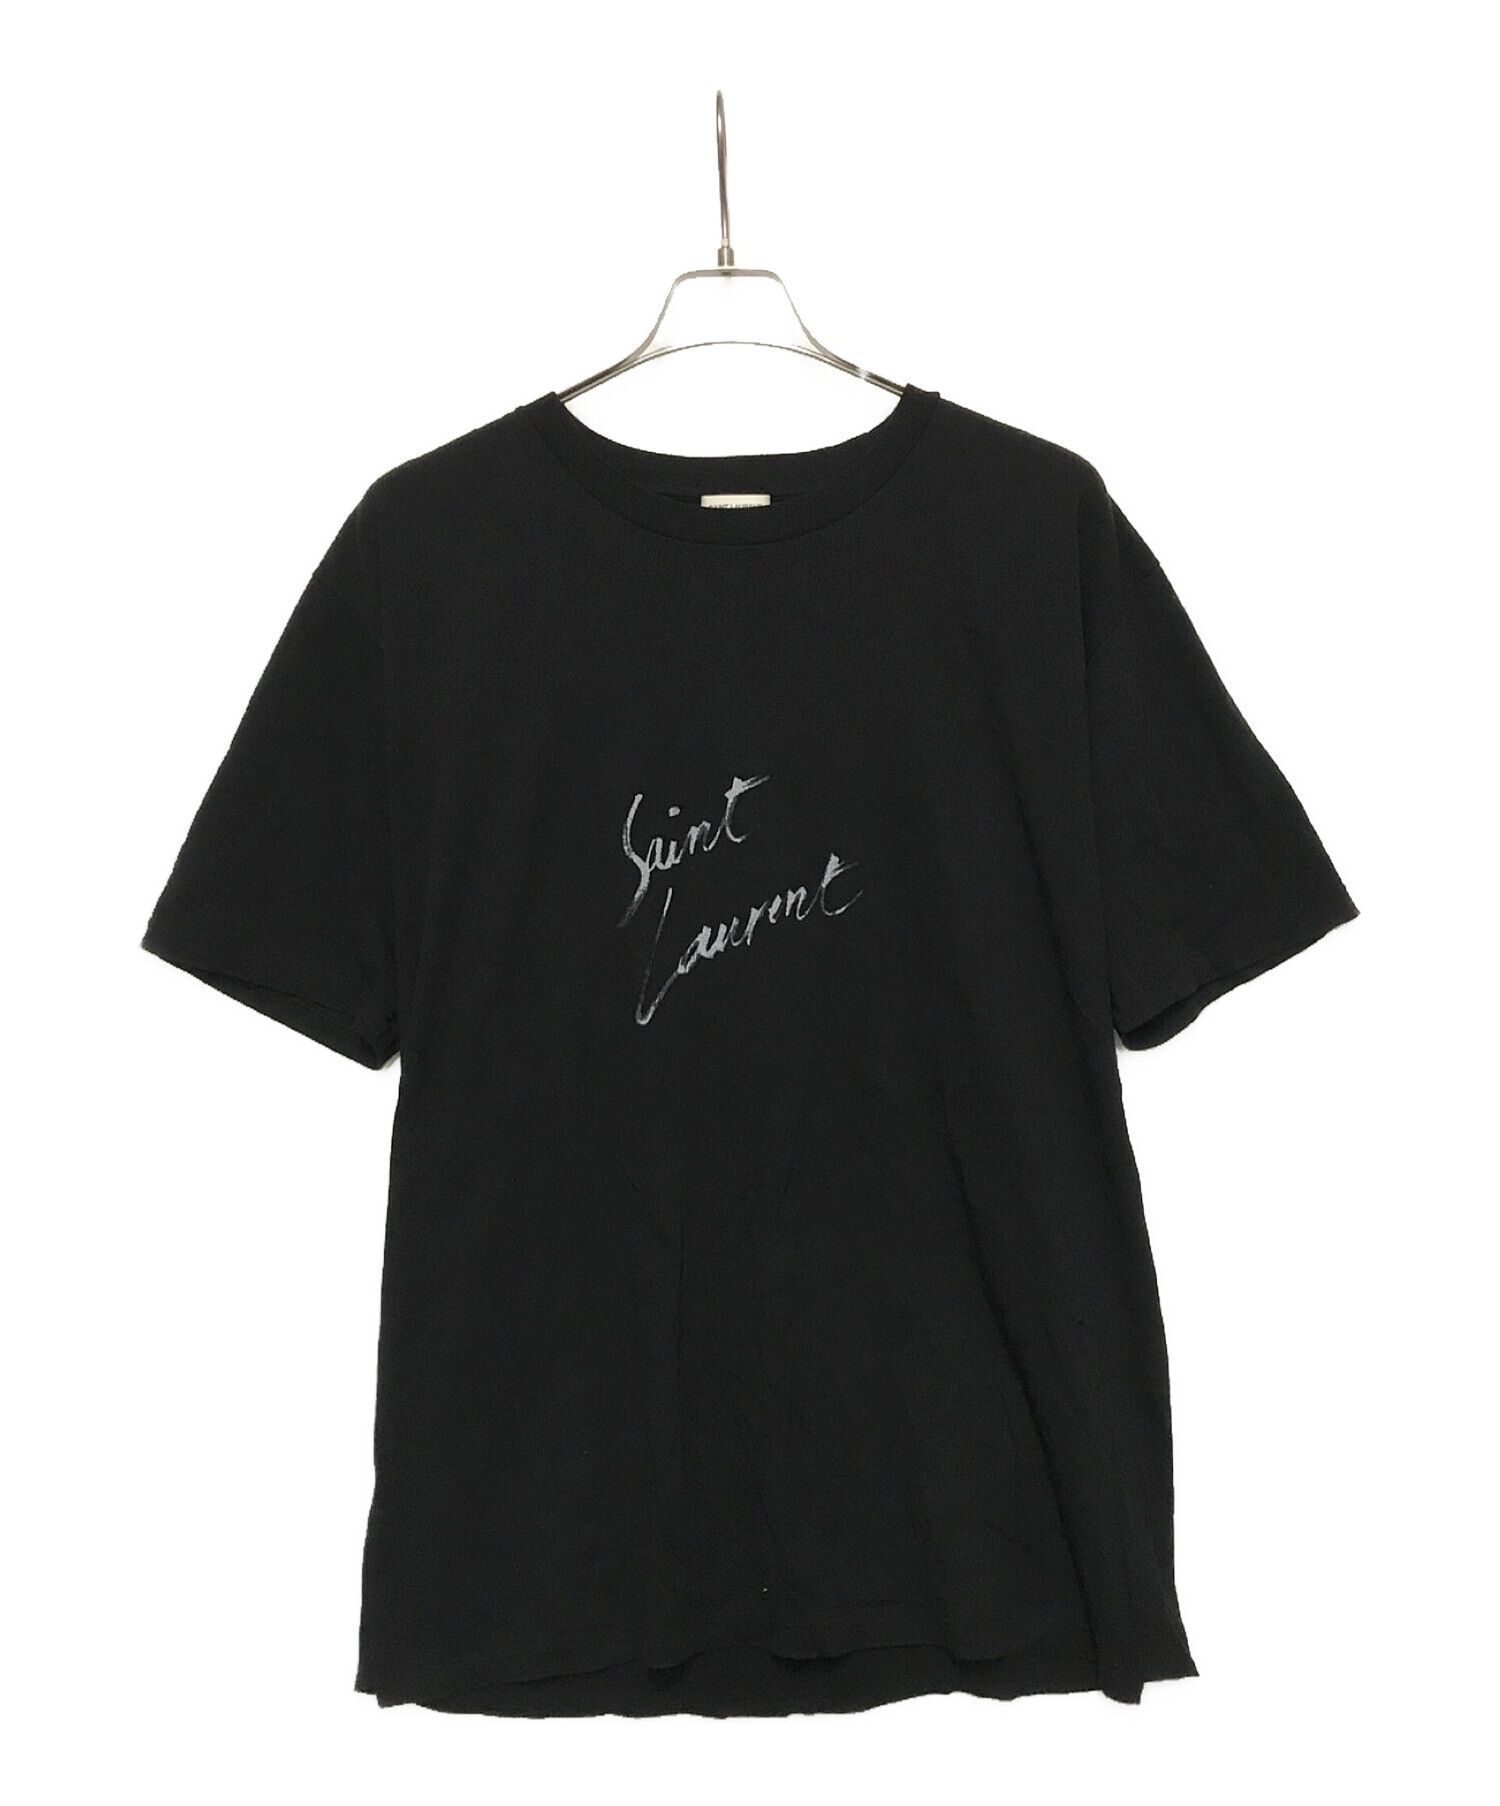 サンローランパリサンローラン SAINT LAURENT Tシャツ Lサイズ 黒